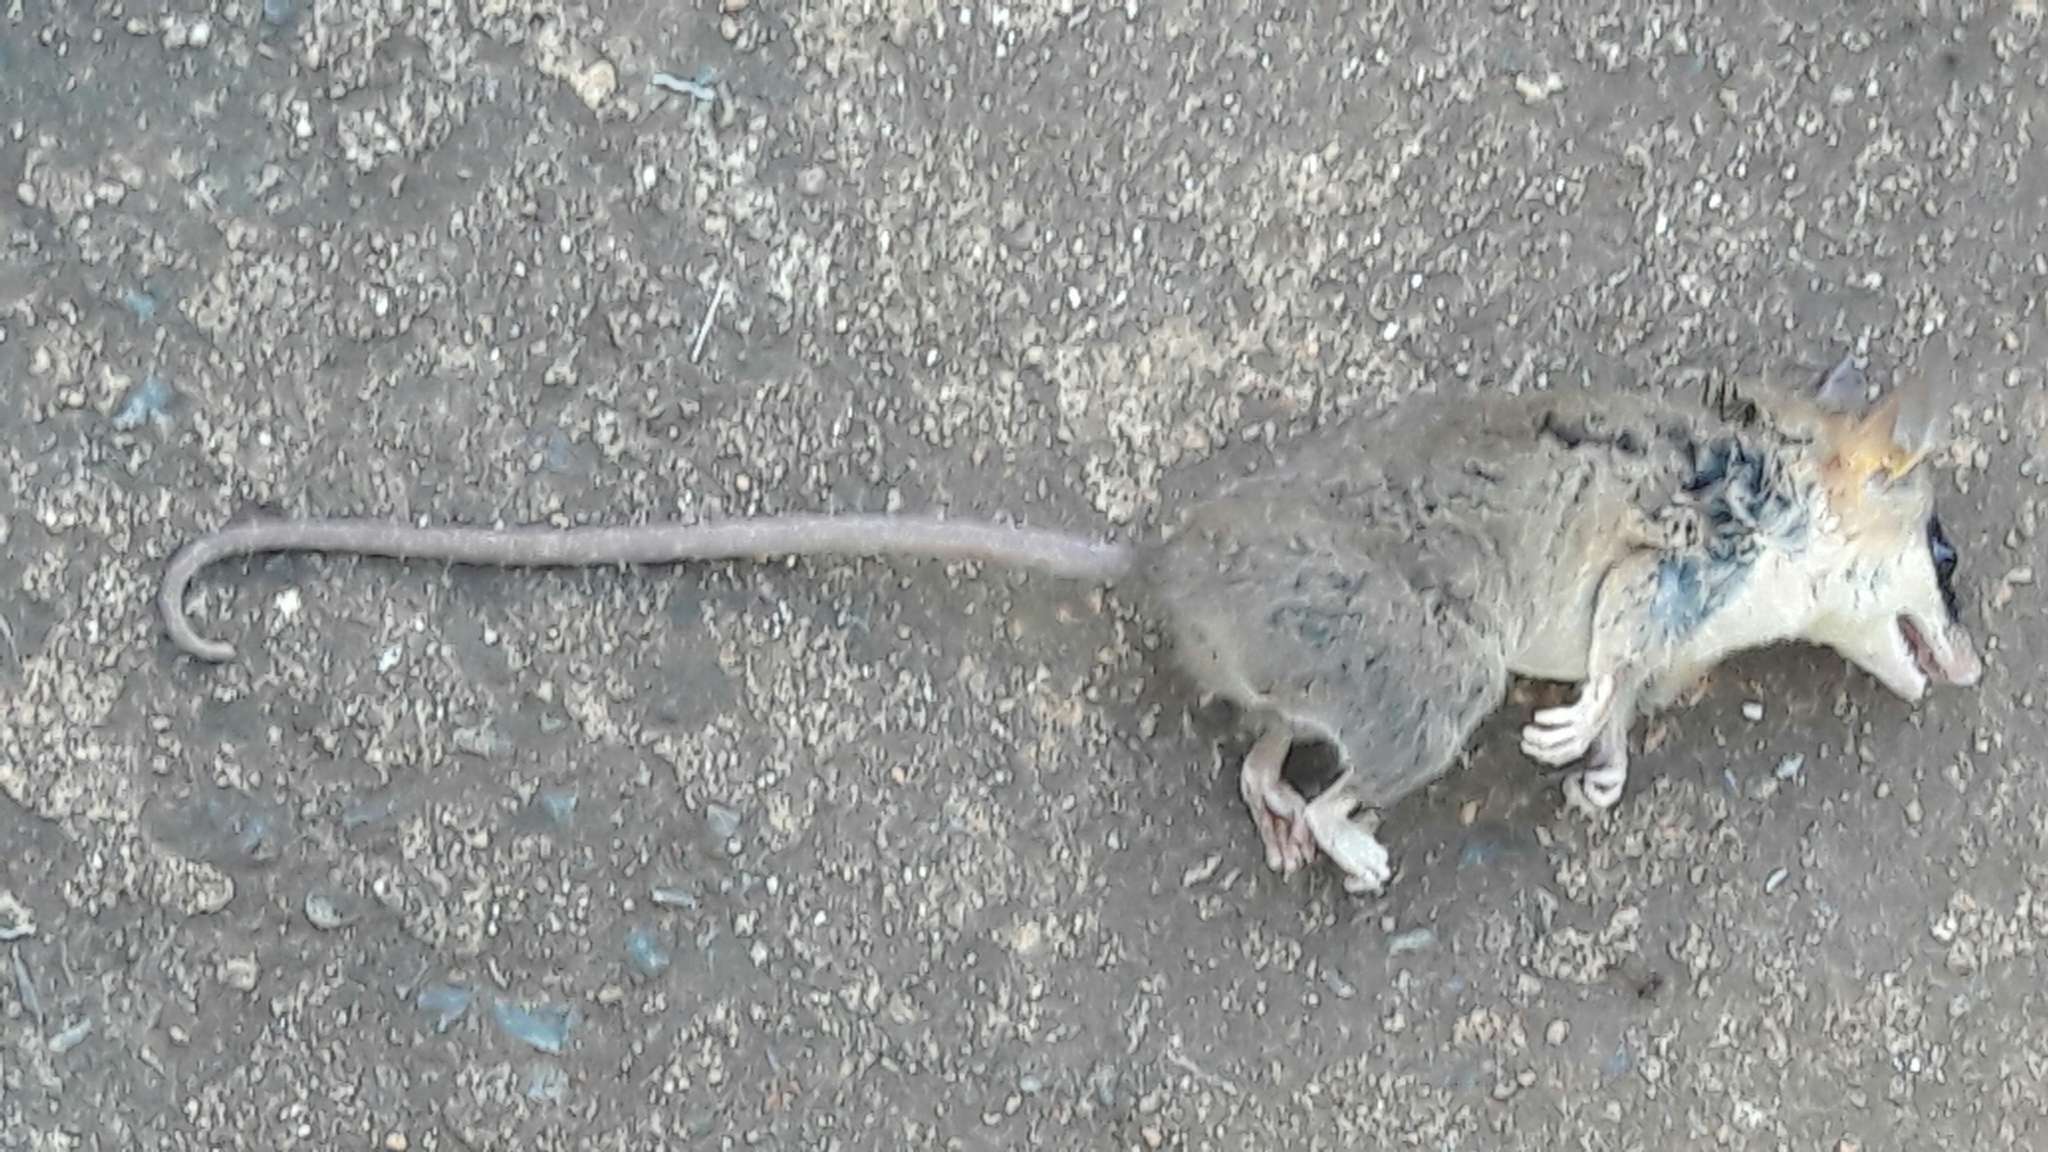 Image of Agile Gracile Mouse Opossum